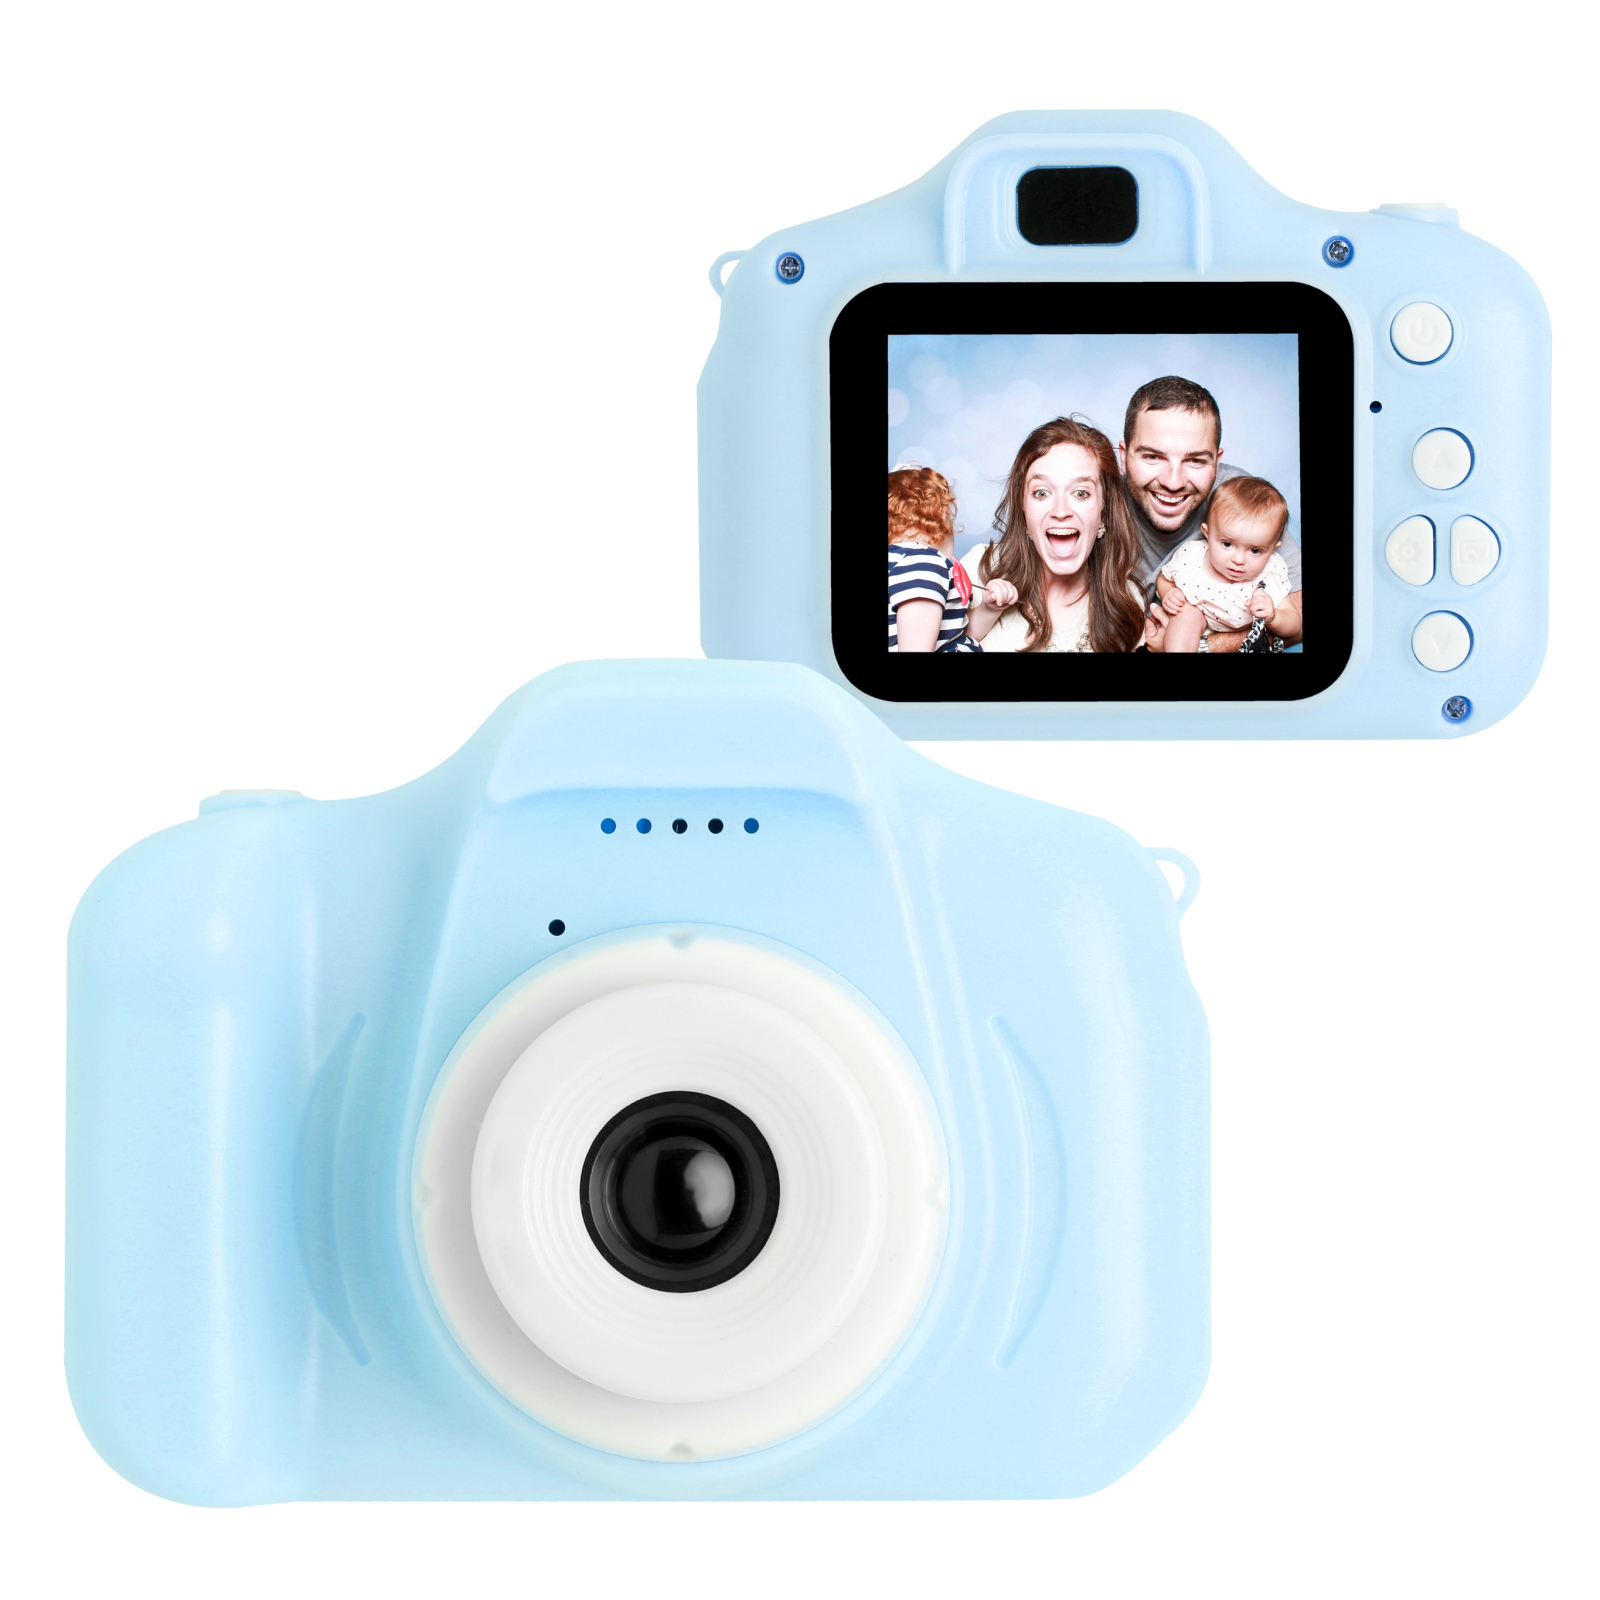 Интерактивная игрушка XoKo Цифровой детский фотоаппарат розовый (KVR-001-PN) изображение 6